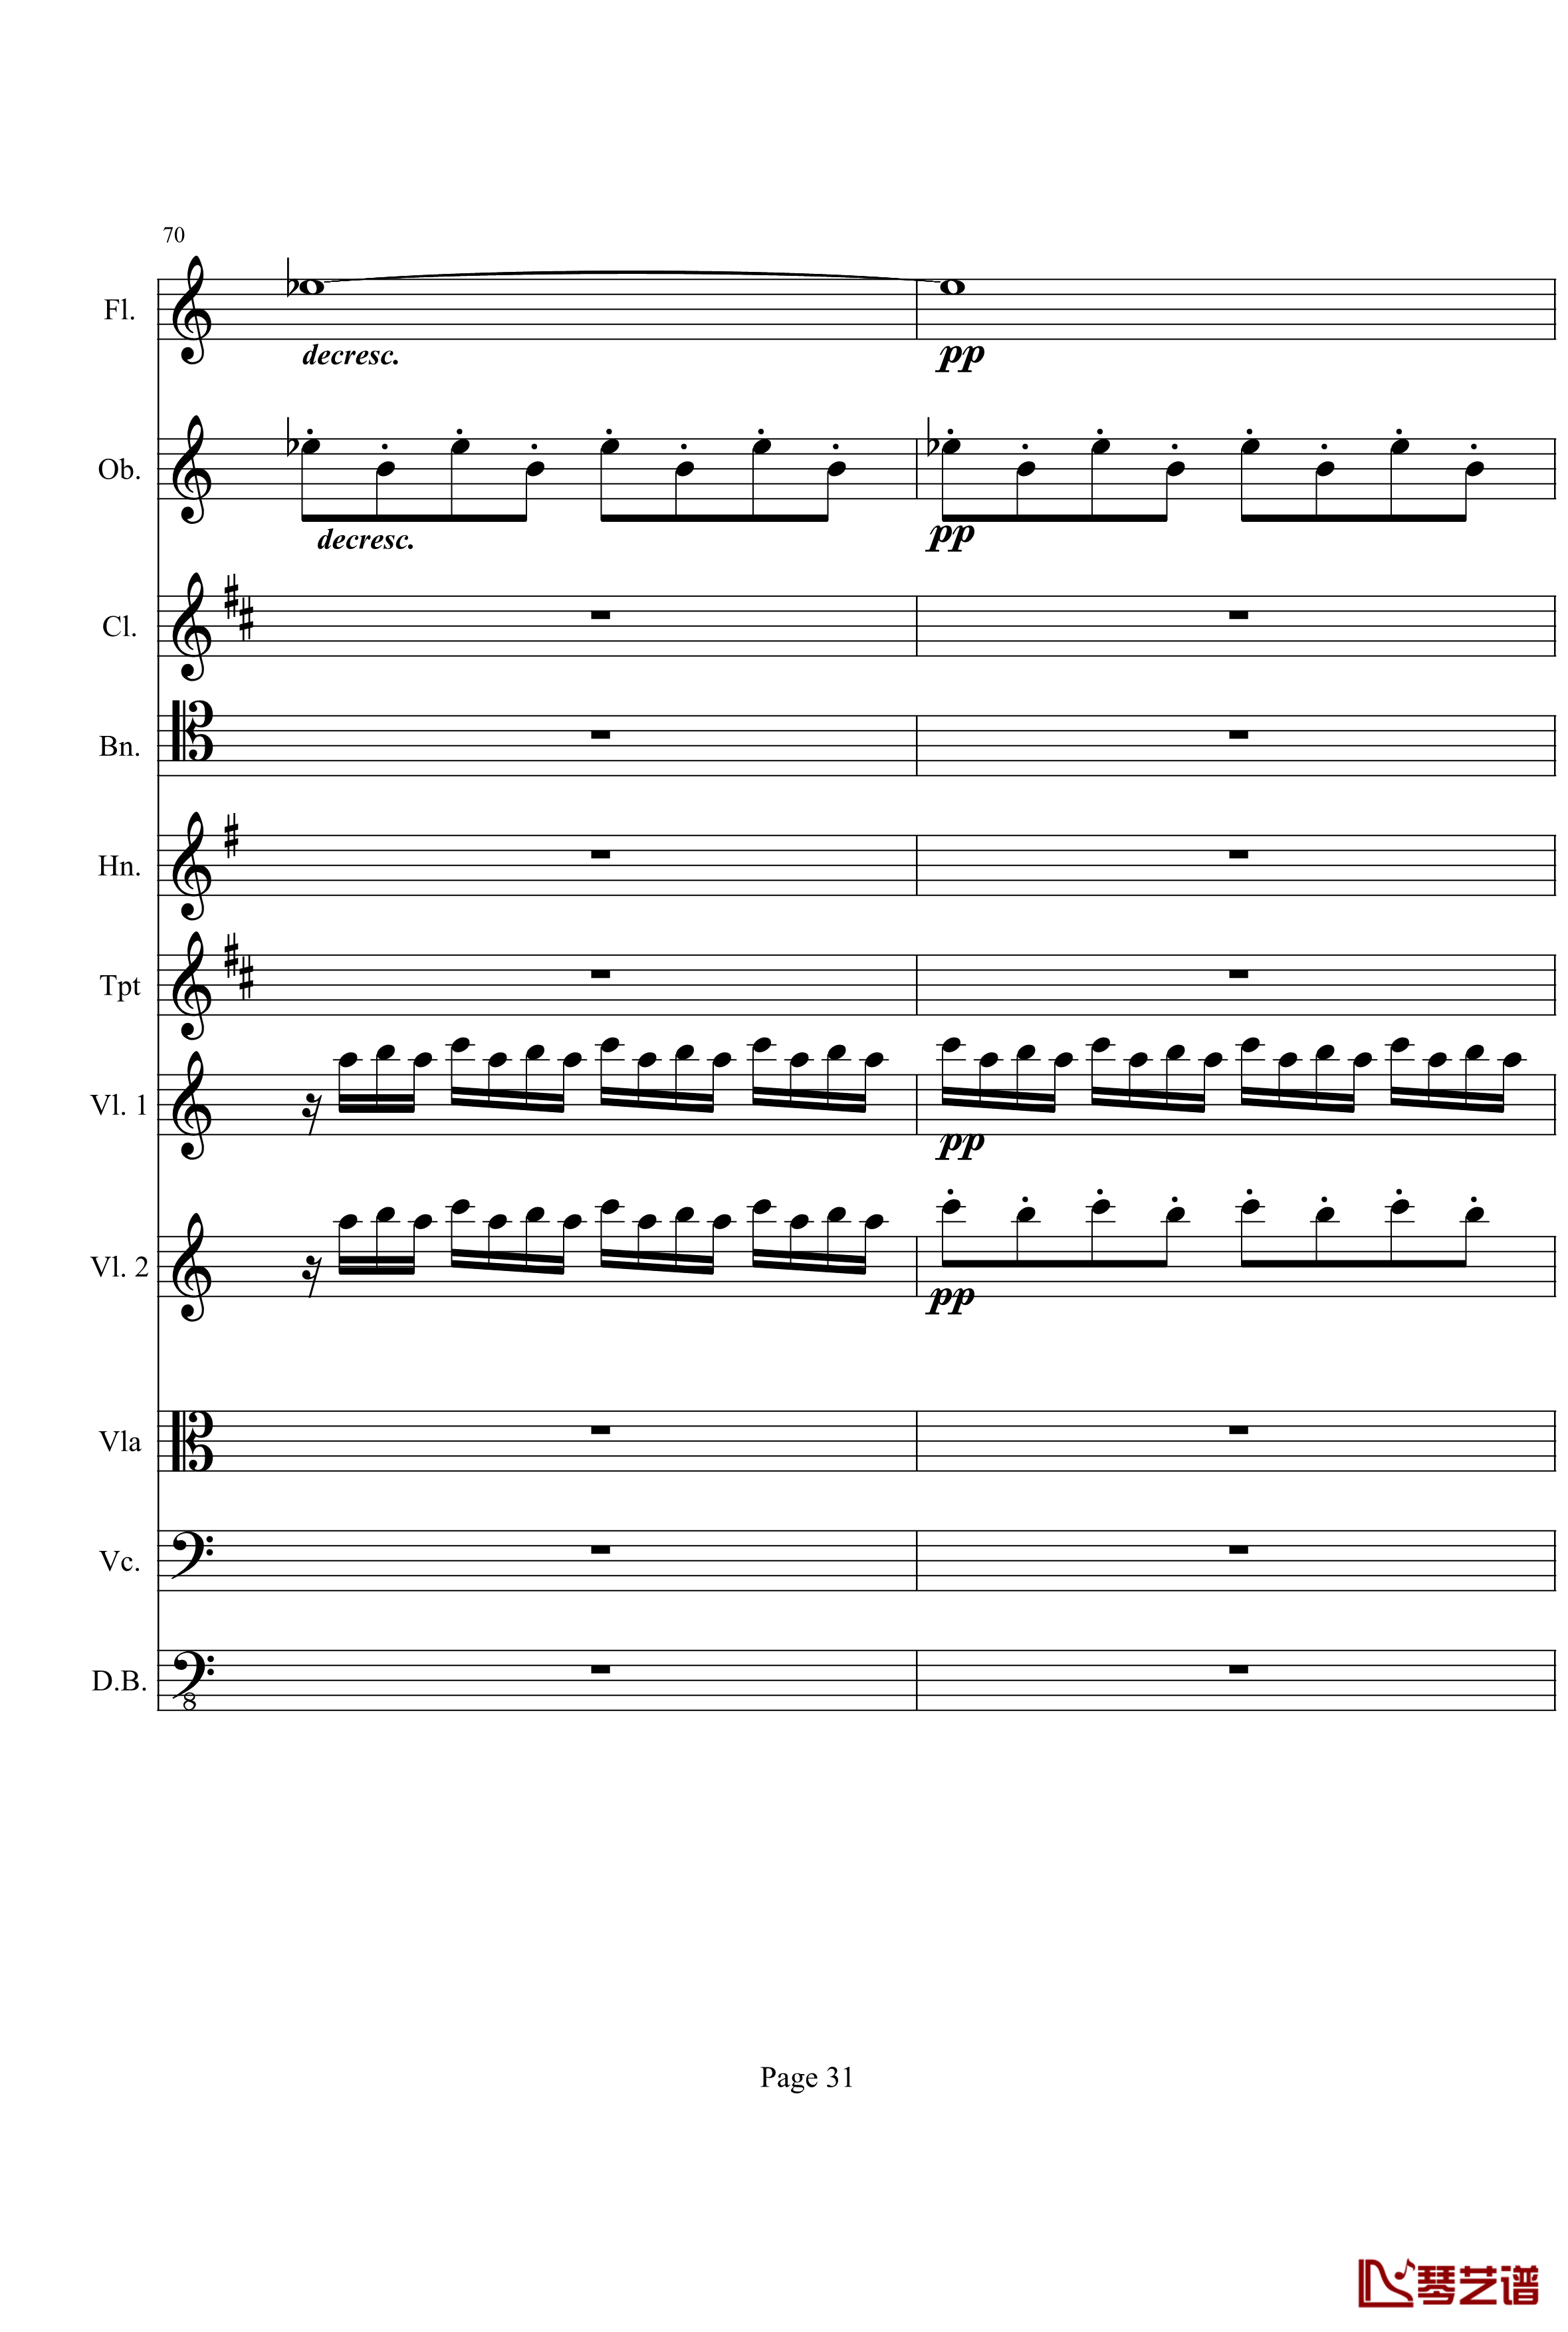 奏鸣曲之交响钢琴谱-第21-Ⅰ-贝多芬-beethoven31